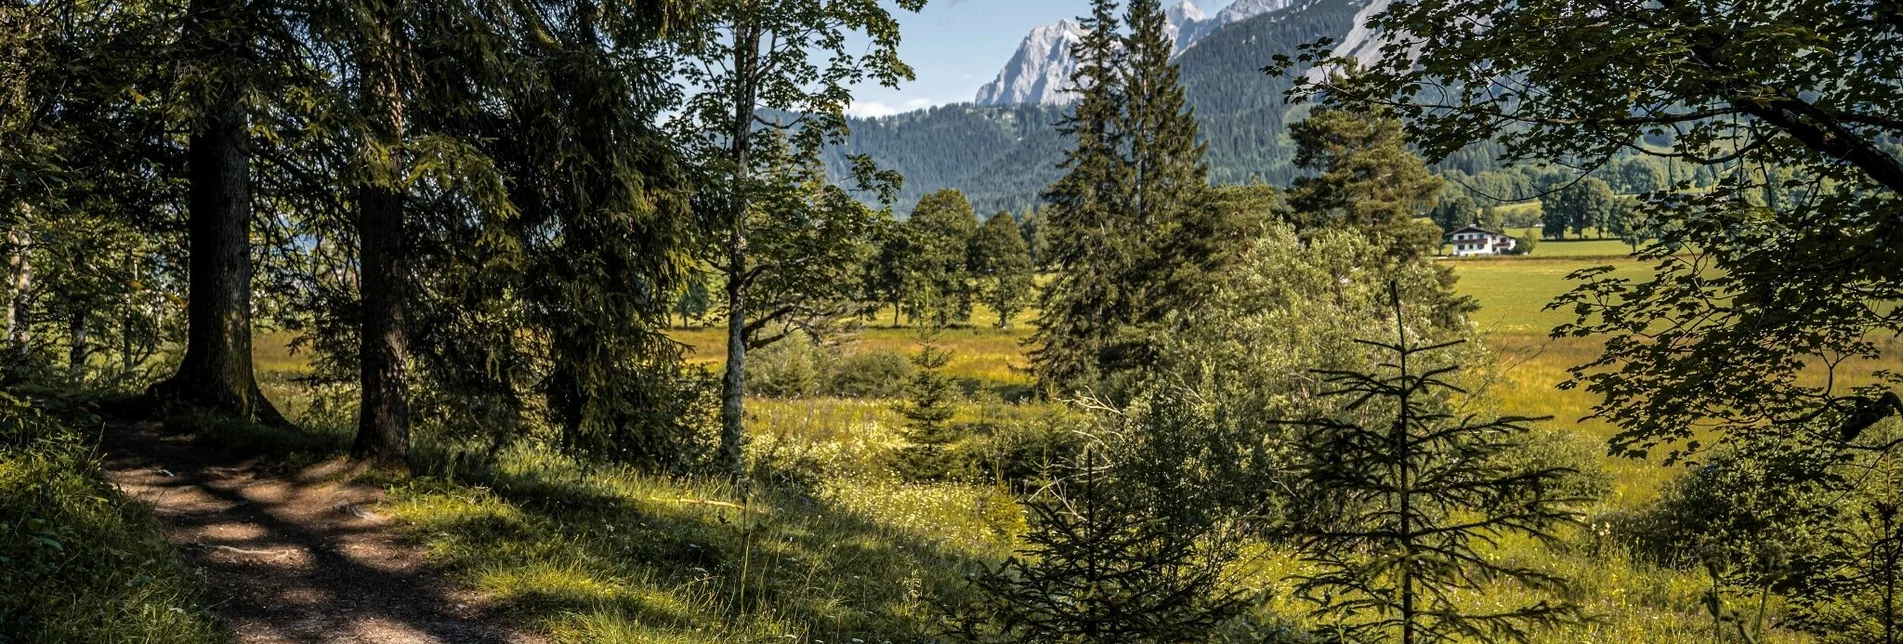 Hiking route Panorama Loop Trail East - Touren-Impression #1 | © Erlebnisregion Schladming-Dachstein